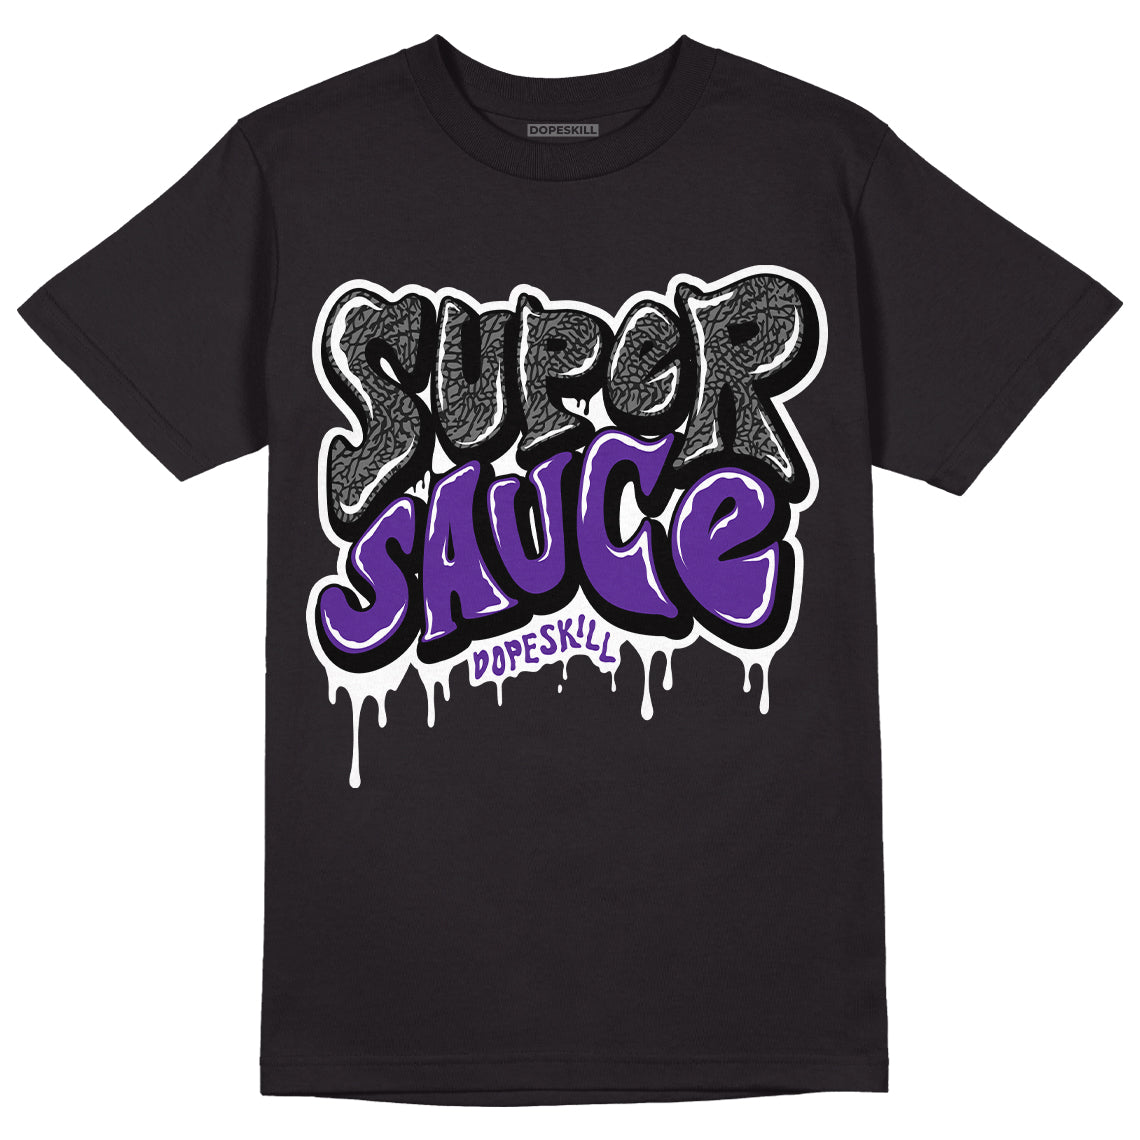 Dark Iris 3s DopeSkill T-Shirt Super Sauce Graphic - Black 